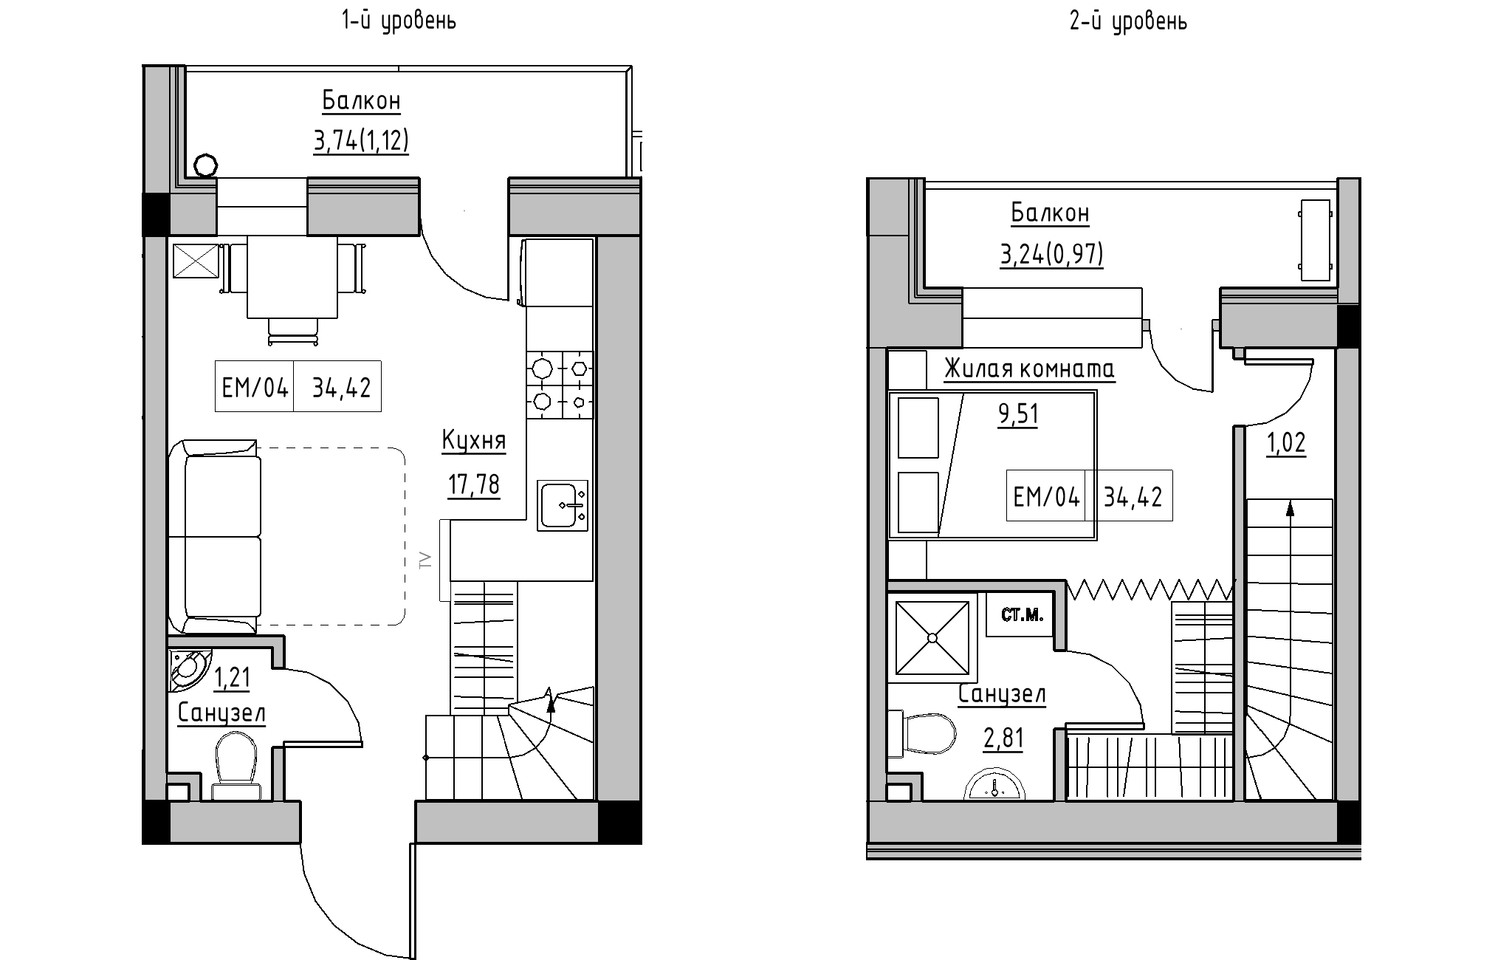 Planning 2-lvl flats area 34.42m2, KS-013-05/0012.